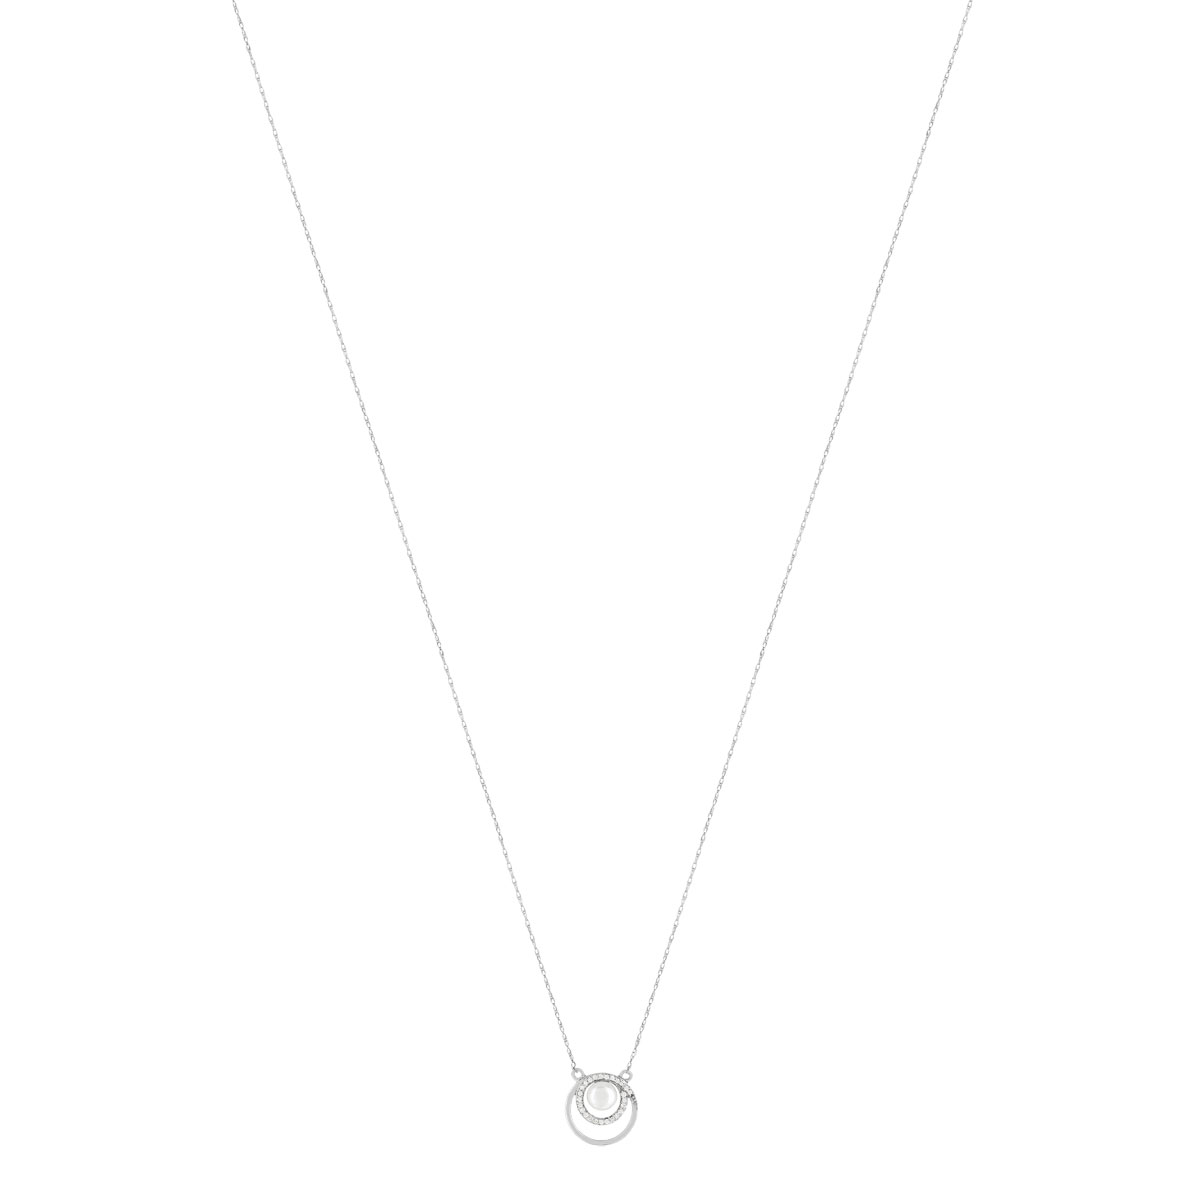 Collier or banc 375, perle de culture de Chine, diamants. Longueur 45 cm. - vue 2